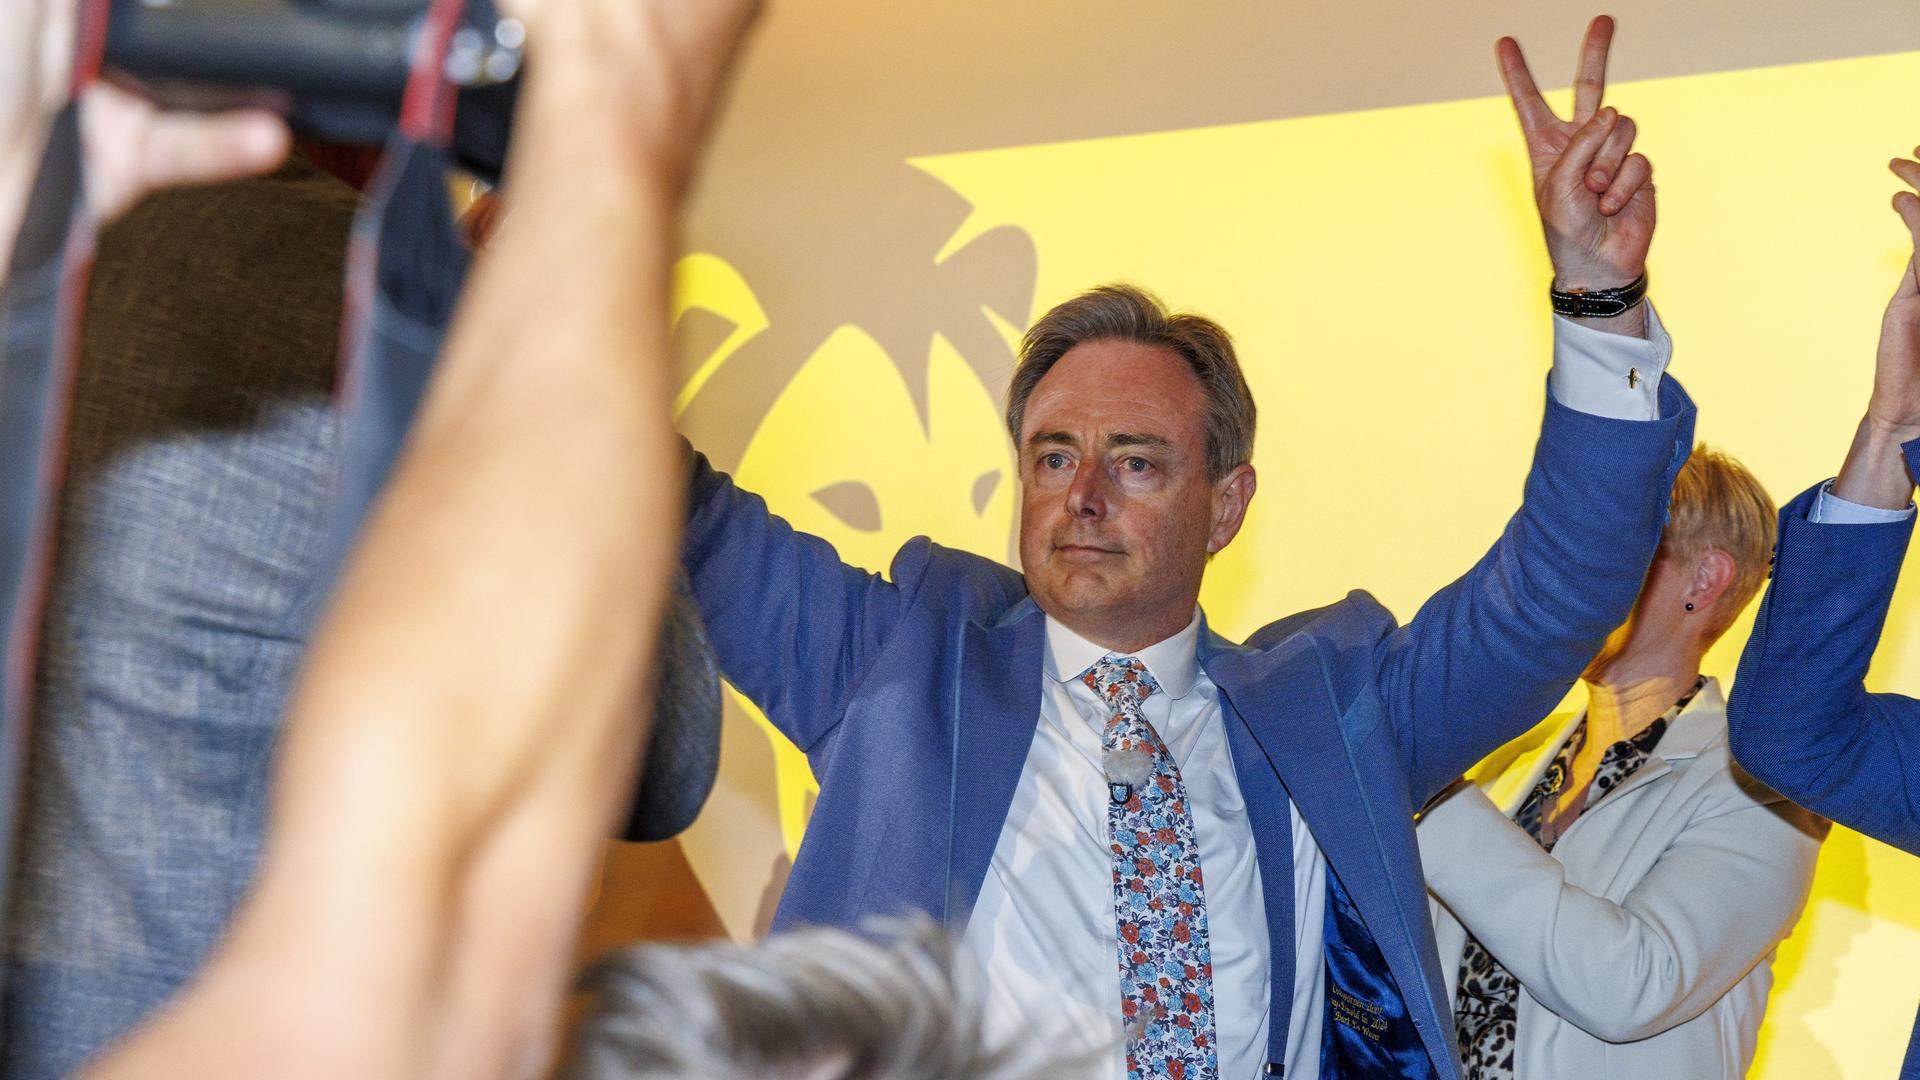 Der N-VA-Vorsitzende Bart De Wever macht vor dem Logo seiner Partei auf einer Wahlparty das Victory-Zeichen